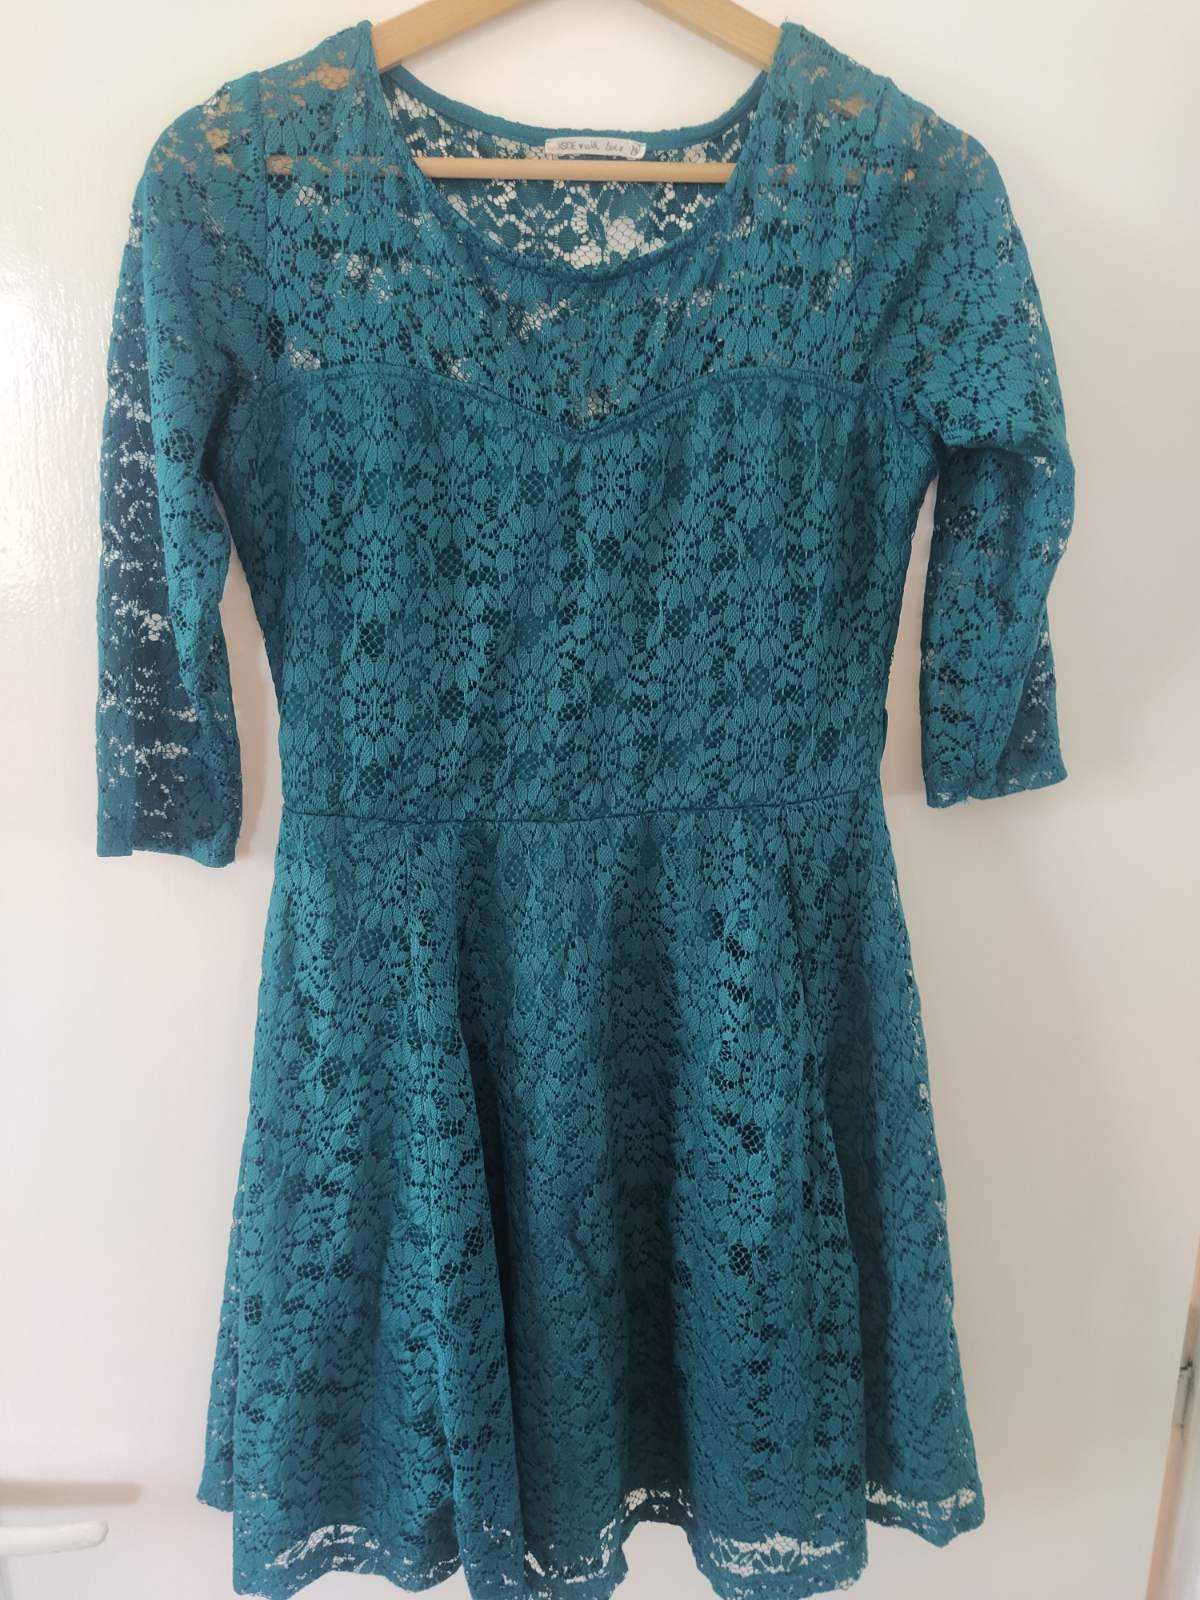 Къса дантелена рокля, синьо-зелена, М  размер